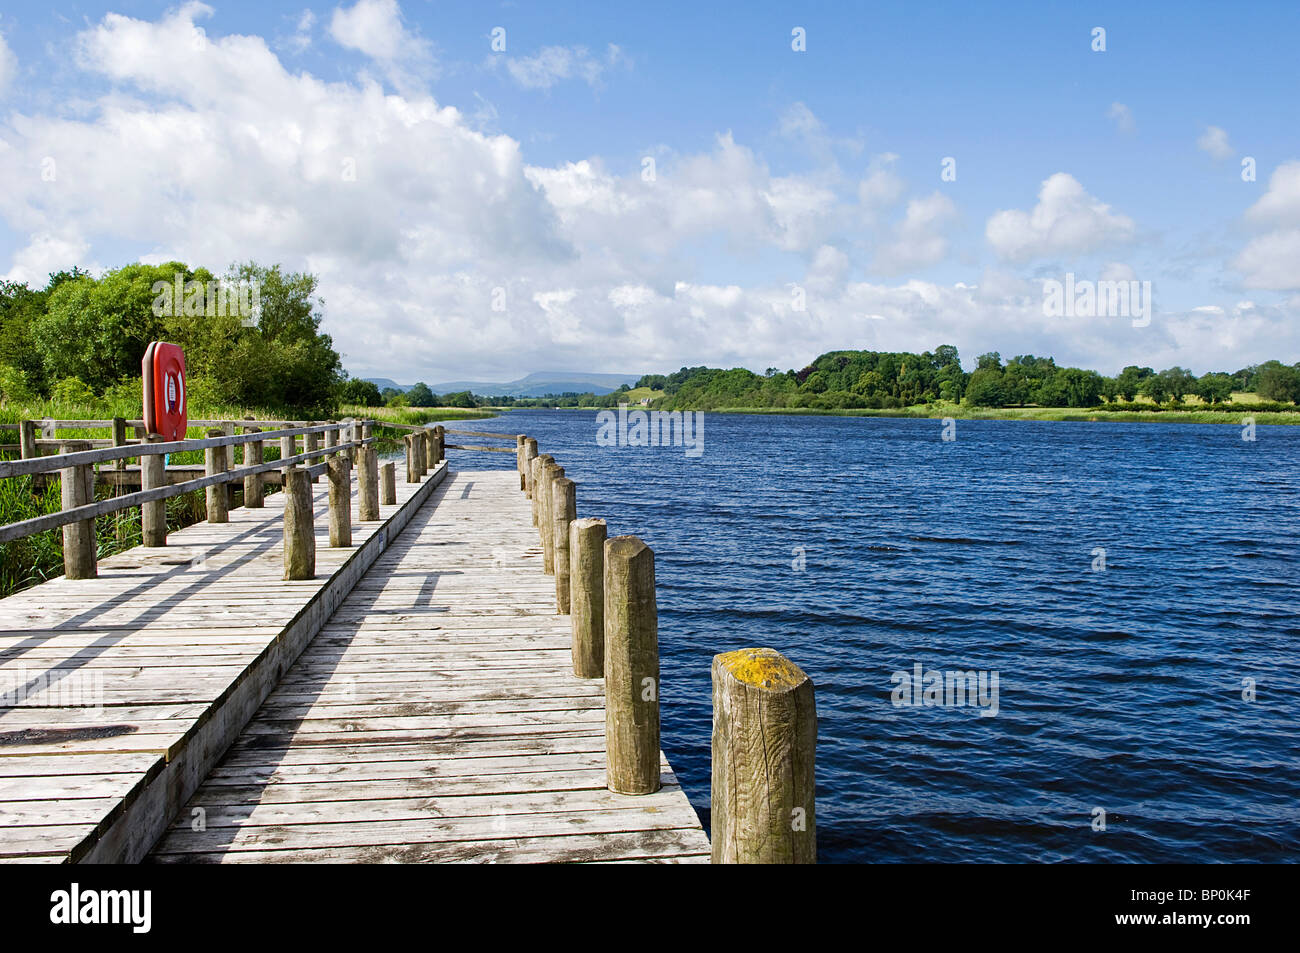 Irlanda del Nord, Fermanagh, Enniskillen. Vista lungo la via navigabile che unisce la parte superiore e inferiore del Lough Erne dal molo. Foto Stock